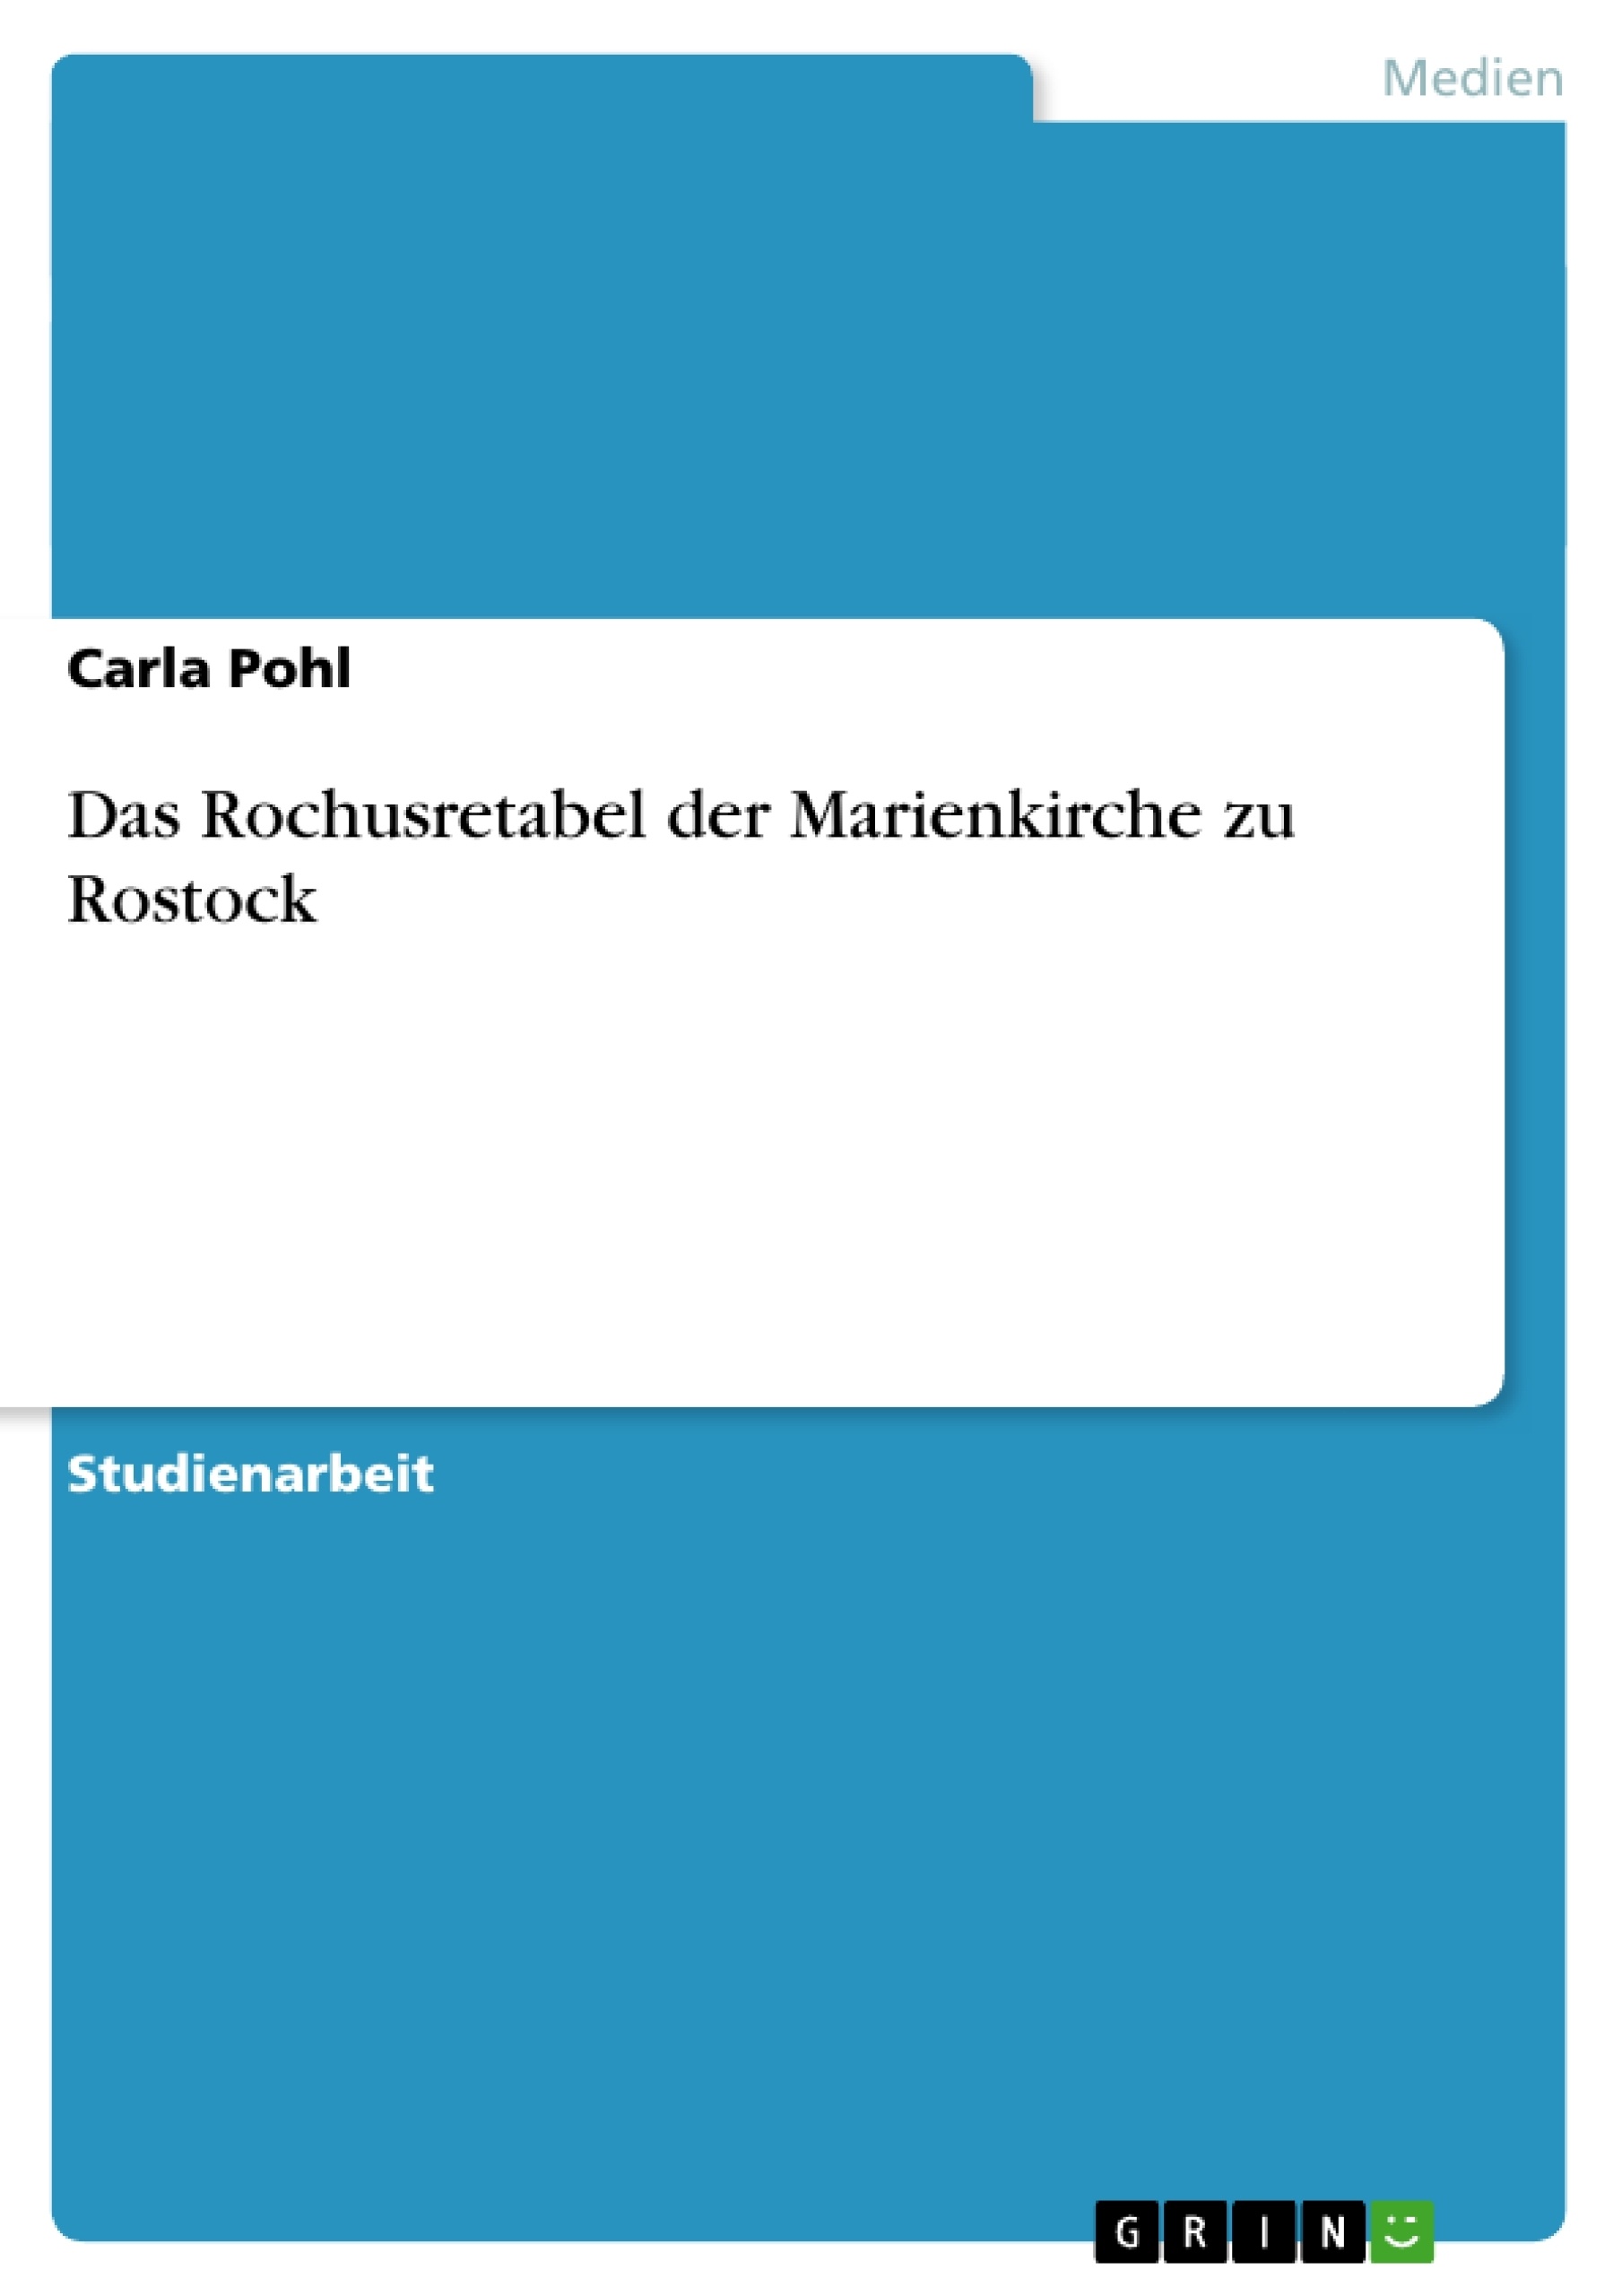 Título: Das Rochusretabel der Marienkirche zu Rostock